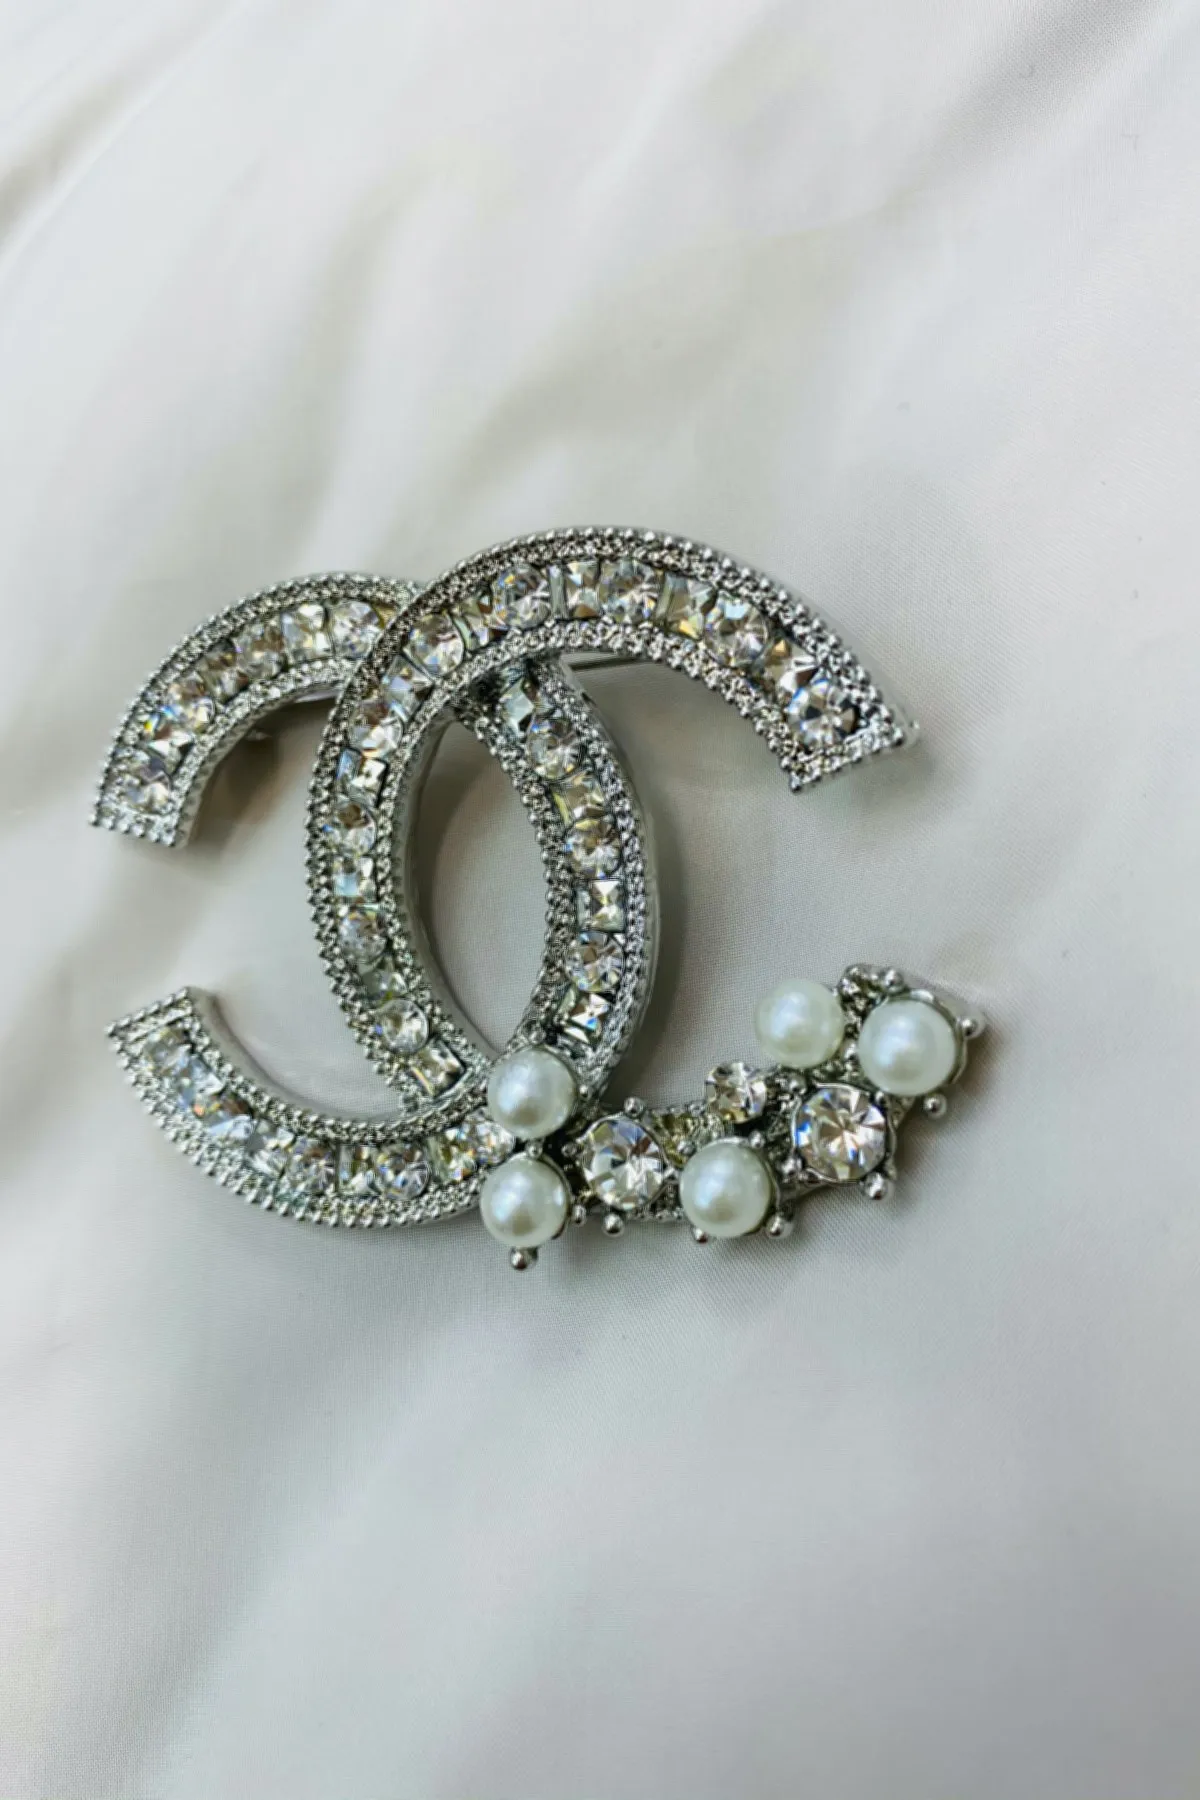 La moda Broches Pin para mujeres Broches de Moda de la Joyería de Perlas de diamantes de imitación Pernos de la Solapa de la vendimia de cristal de diamante de imitación brooche 3